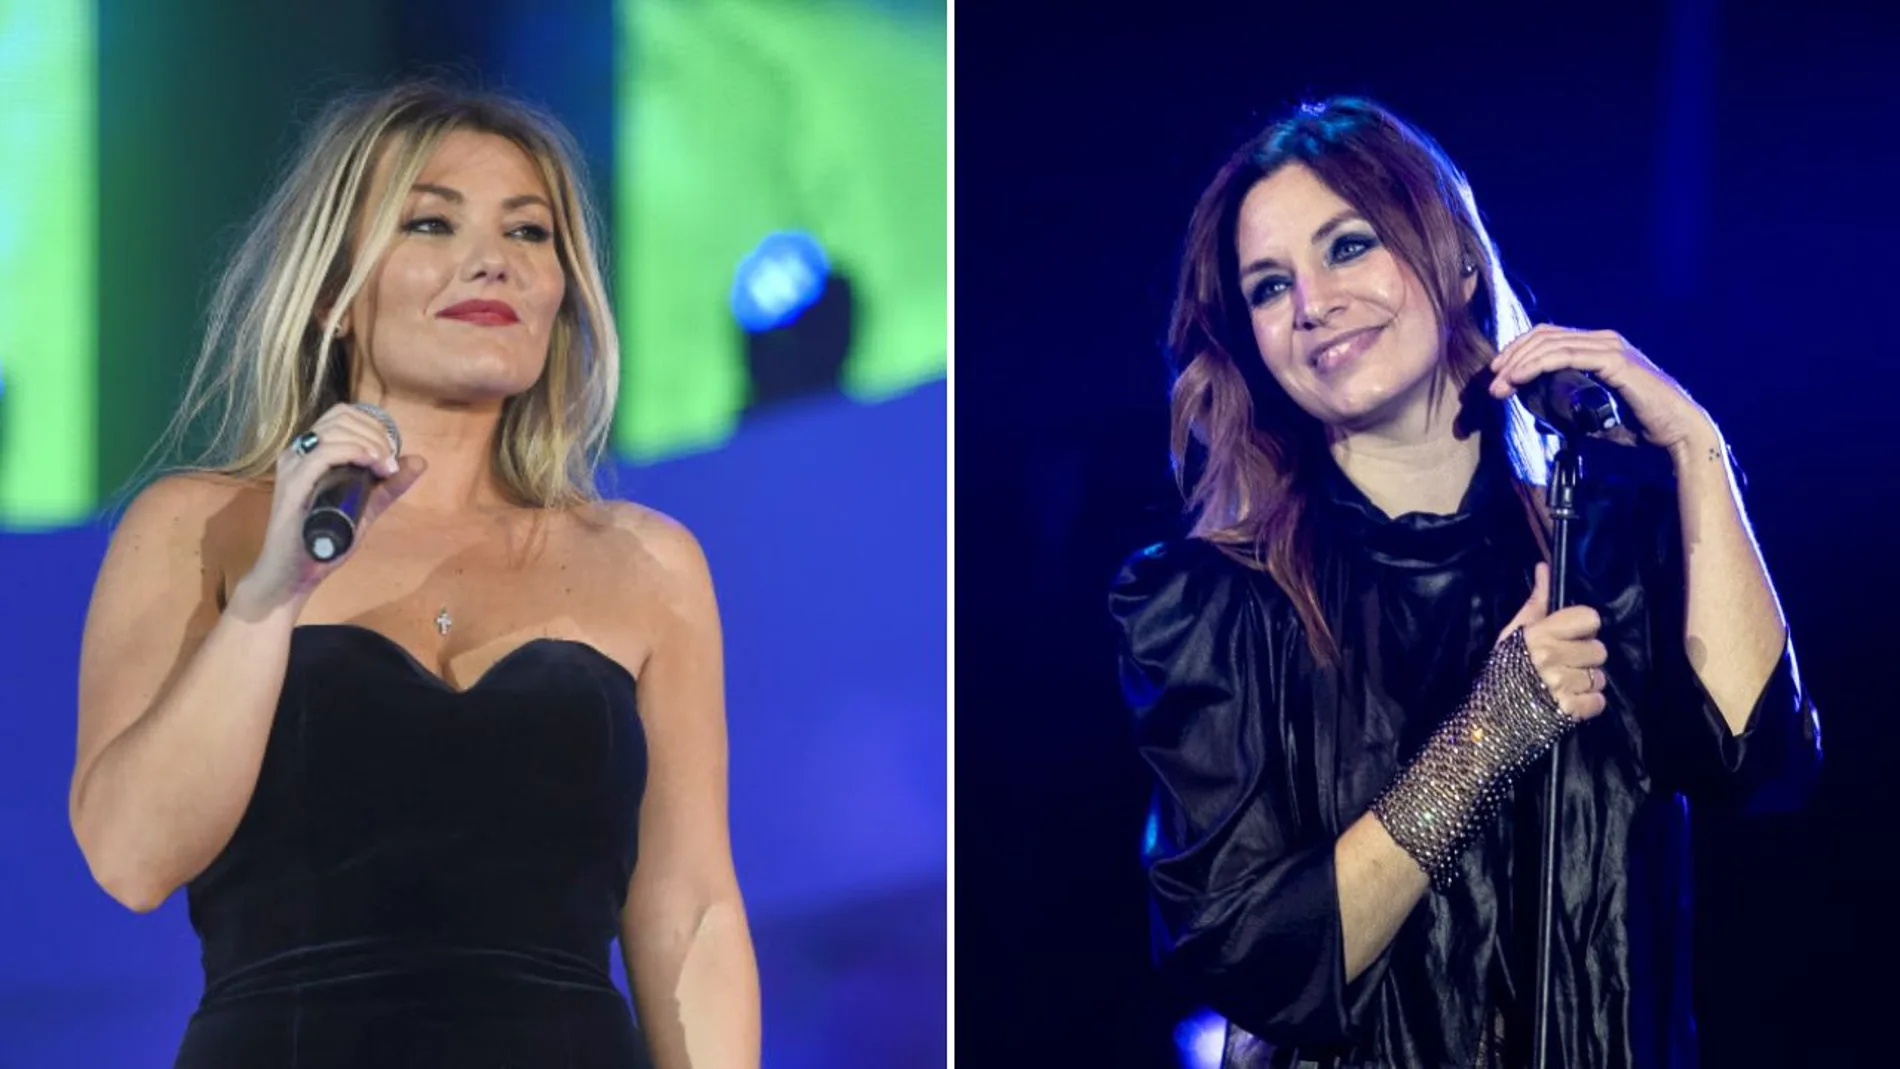 La relación entre Amaia Montero y Leire Martínez, dos cantantes que han  ocupado el mismo lugar en 'La Oreja de Van Gogh